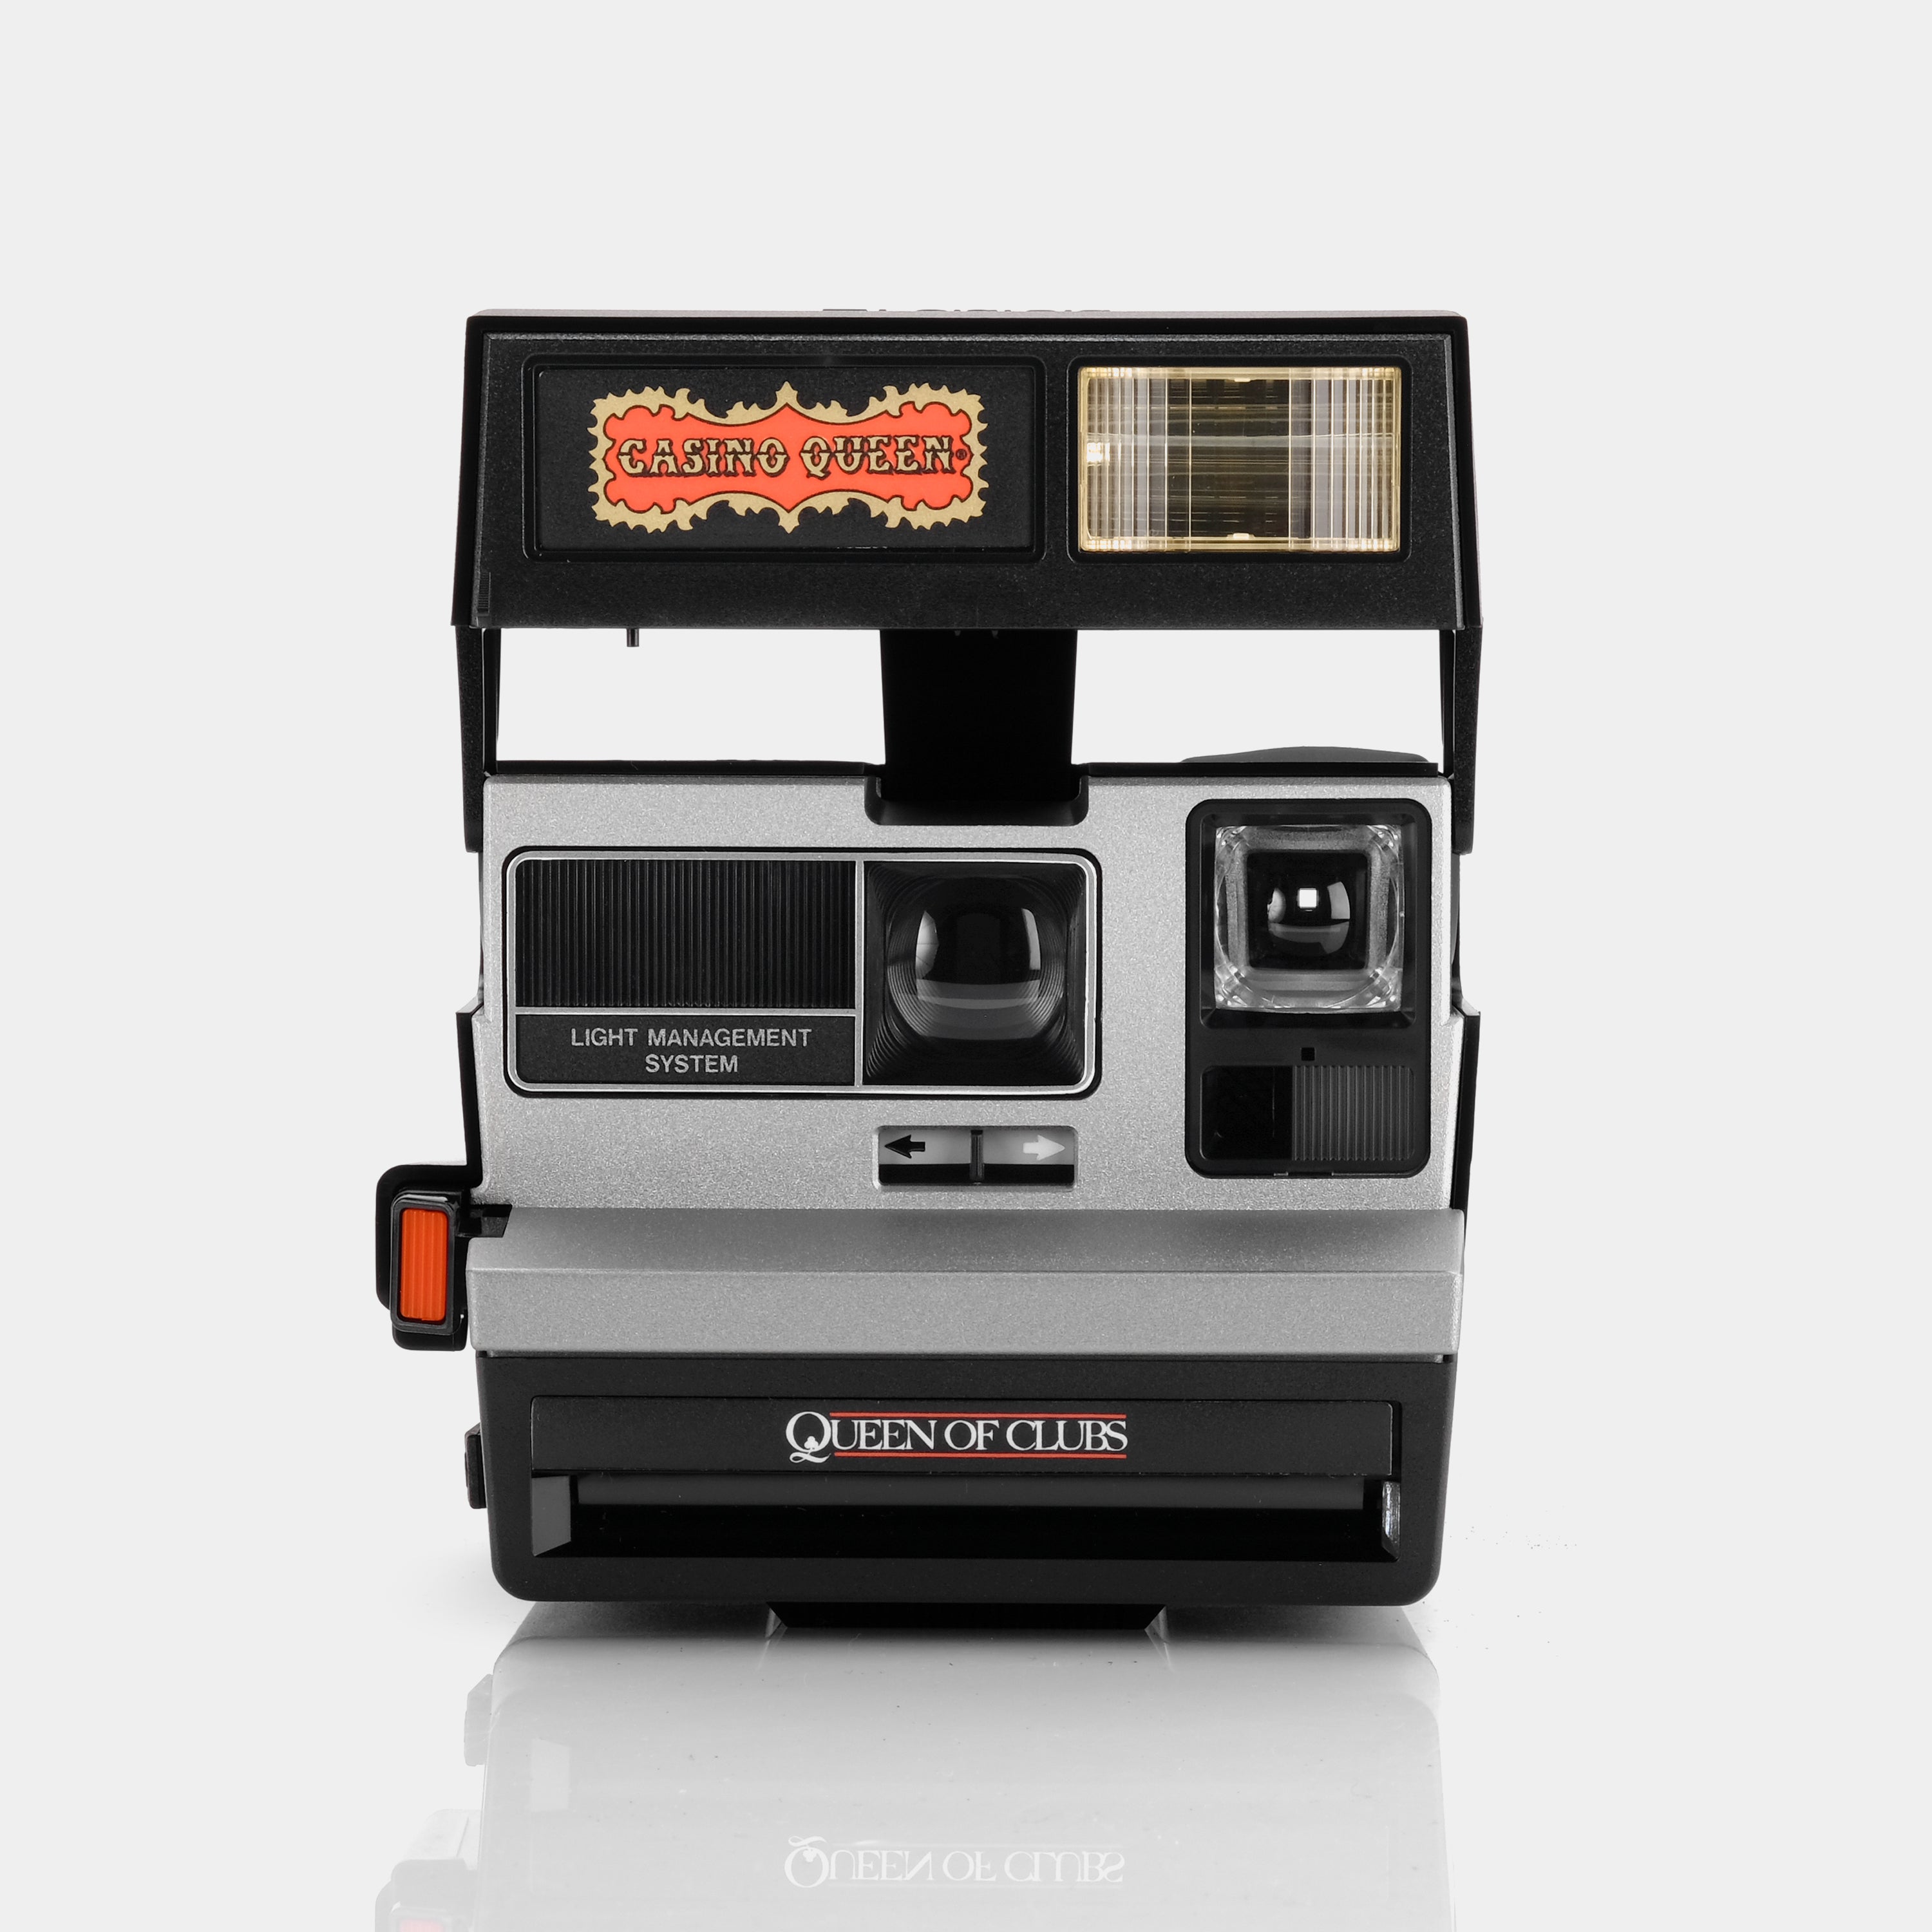 Polaroid 600 Queen of Clubs Casino Queen Instant Film Camera